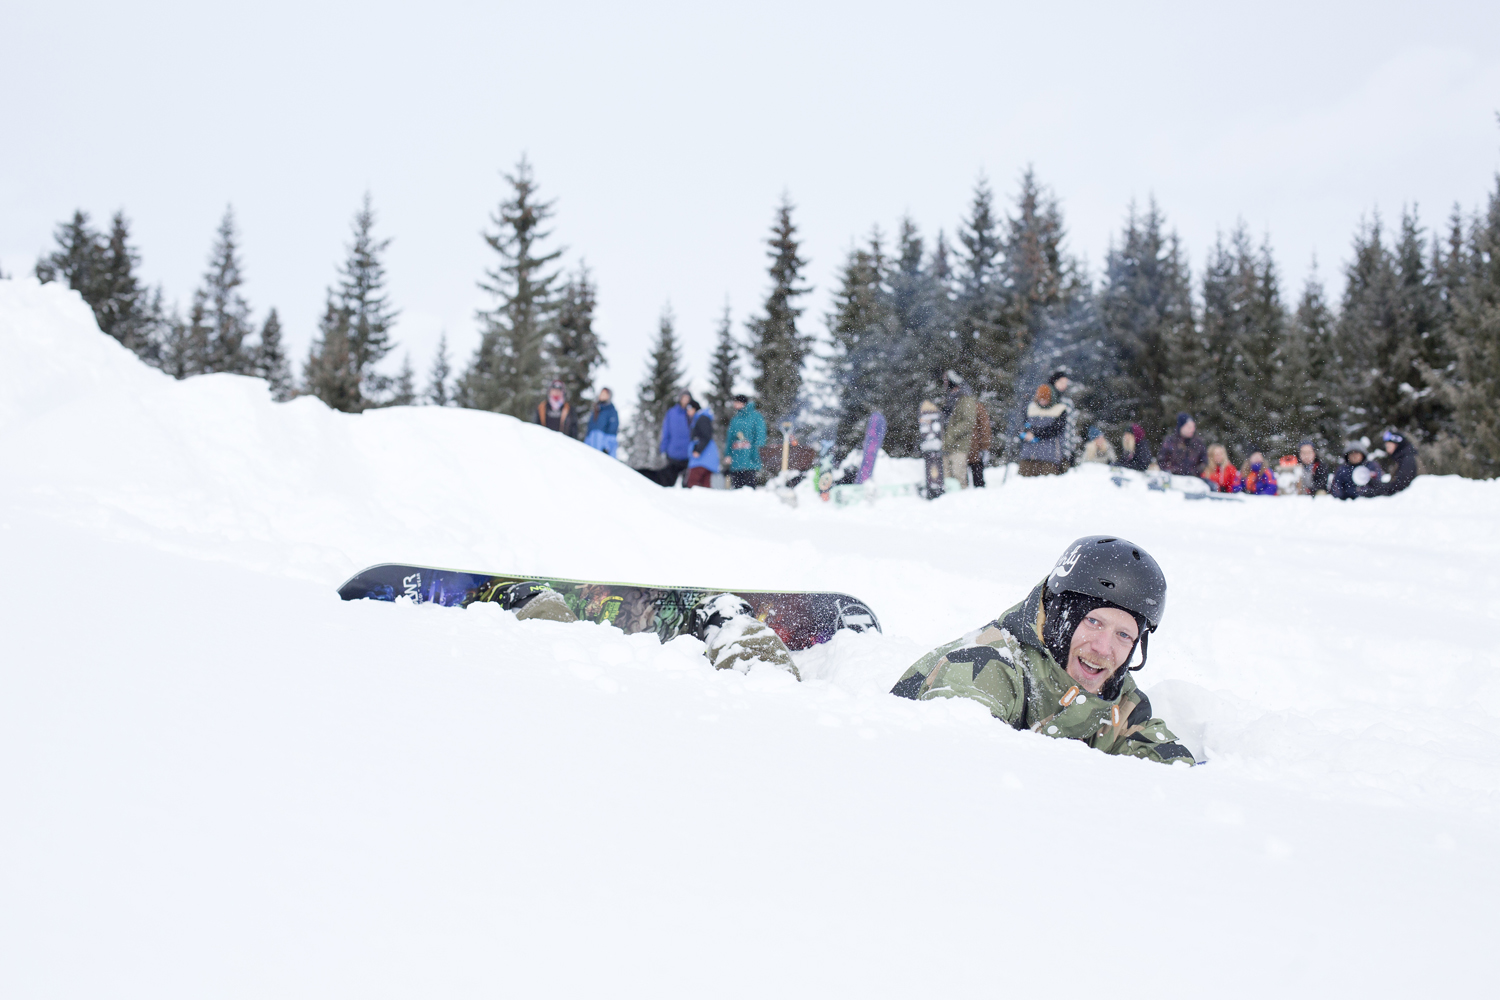 Marcus vores svenske parkshaper leger i snen